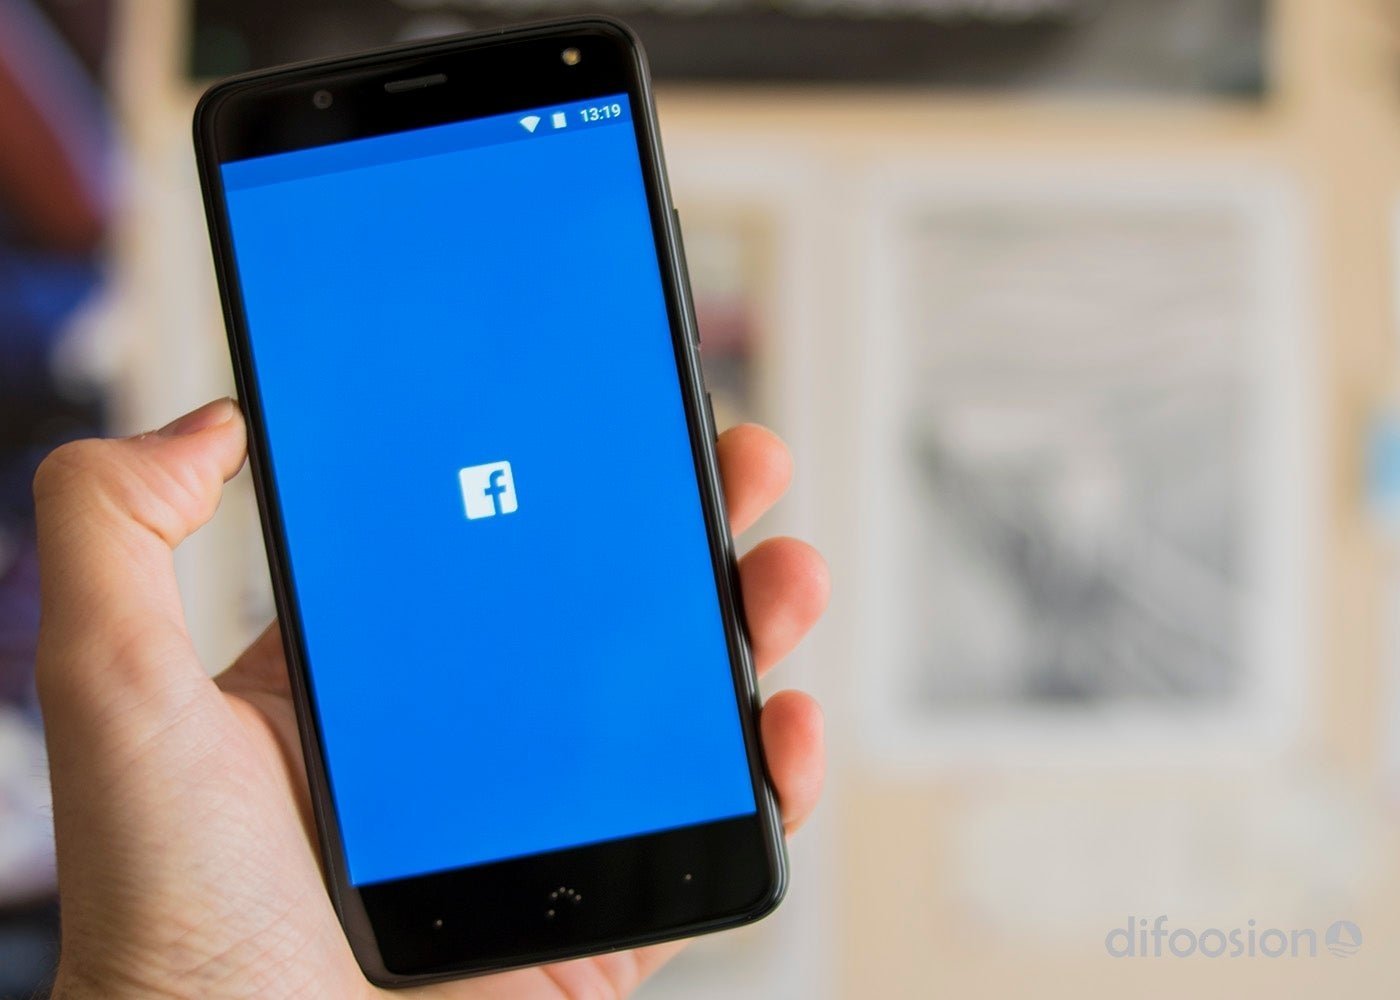 Facebook decidirá si eres de fiar a la hora de compartir noticias con tus contactos